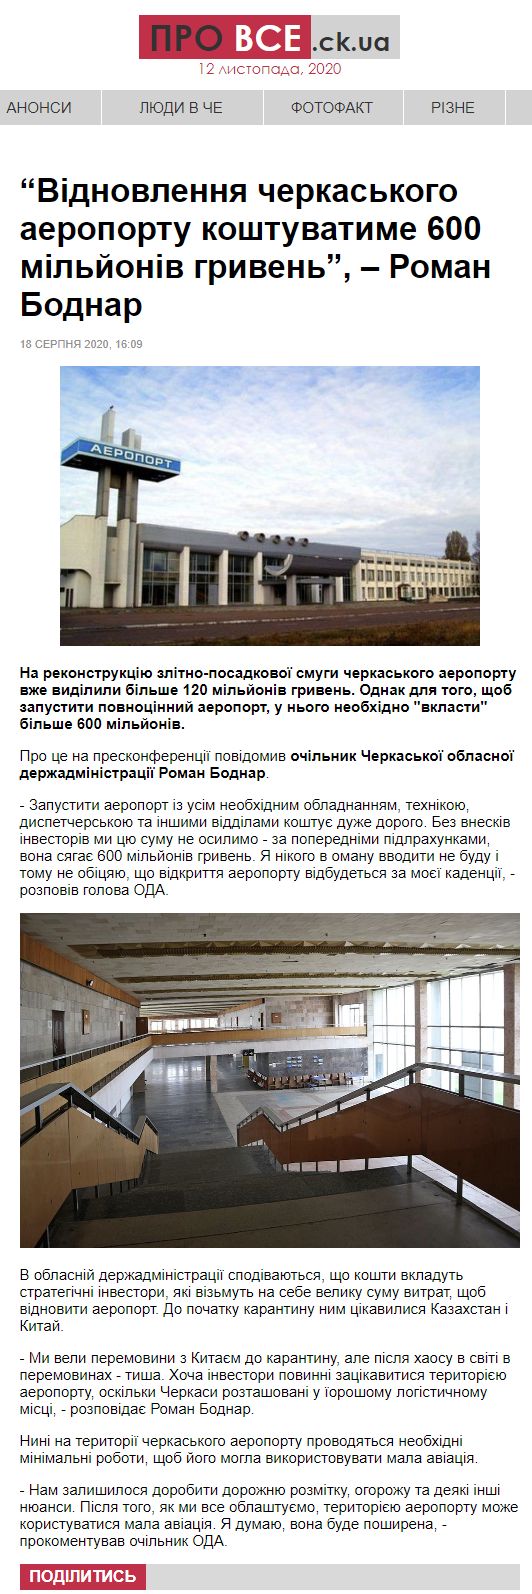 https://provce.ck.ua/vidnovlennia-cherkaskoho-aeroportu-koshtuvatyme-600-milyoniv-hryven-roman-bodnar/